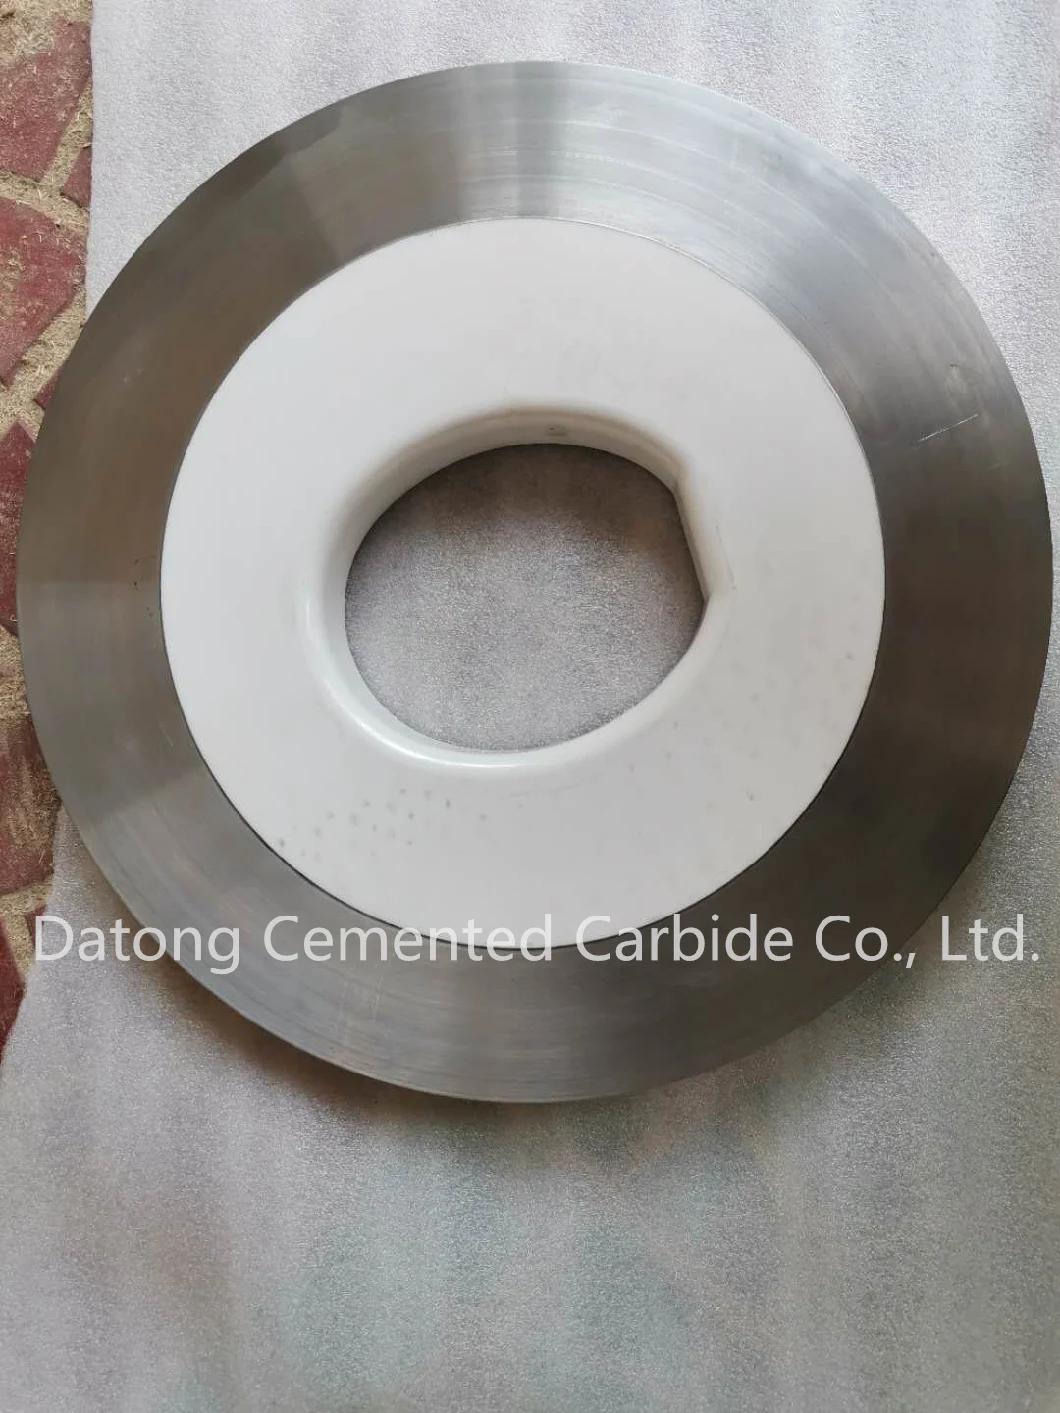 Non-Standard Custom Ceramic Products. Silicon Nitride. Zirconia. Boron Carbide. Ceramics